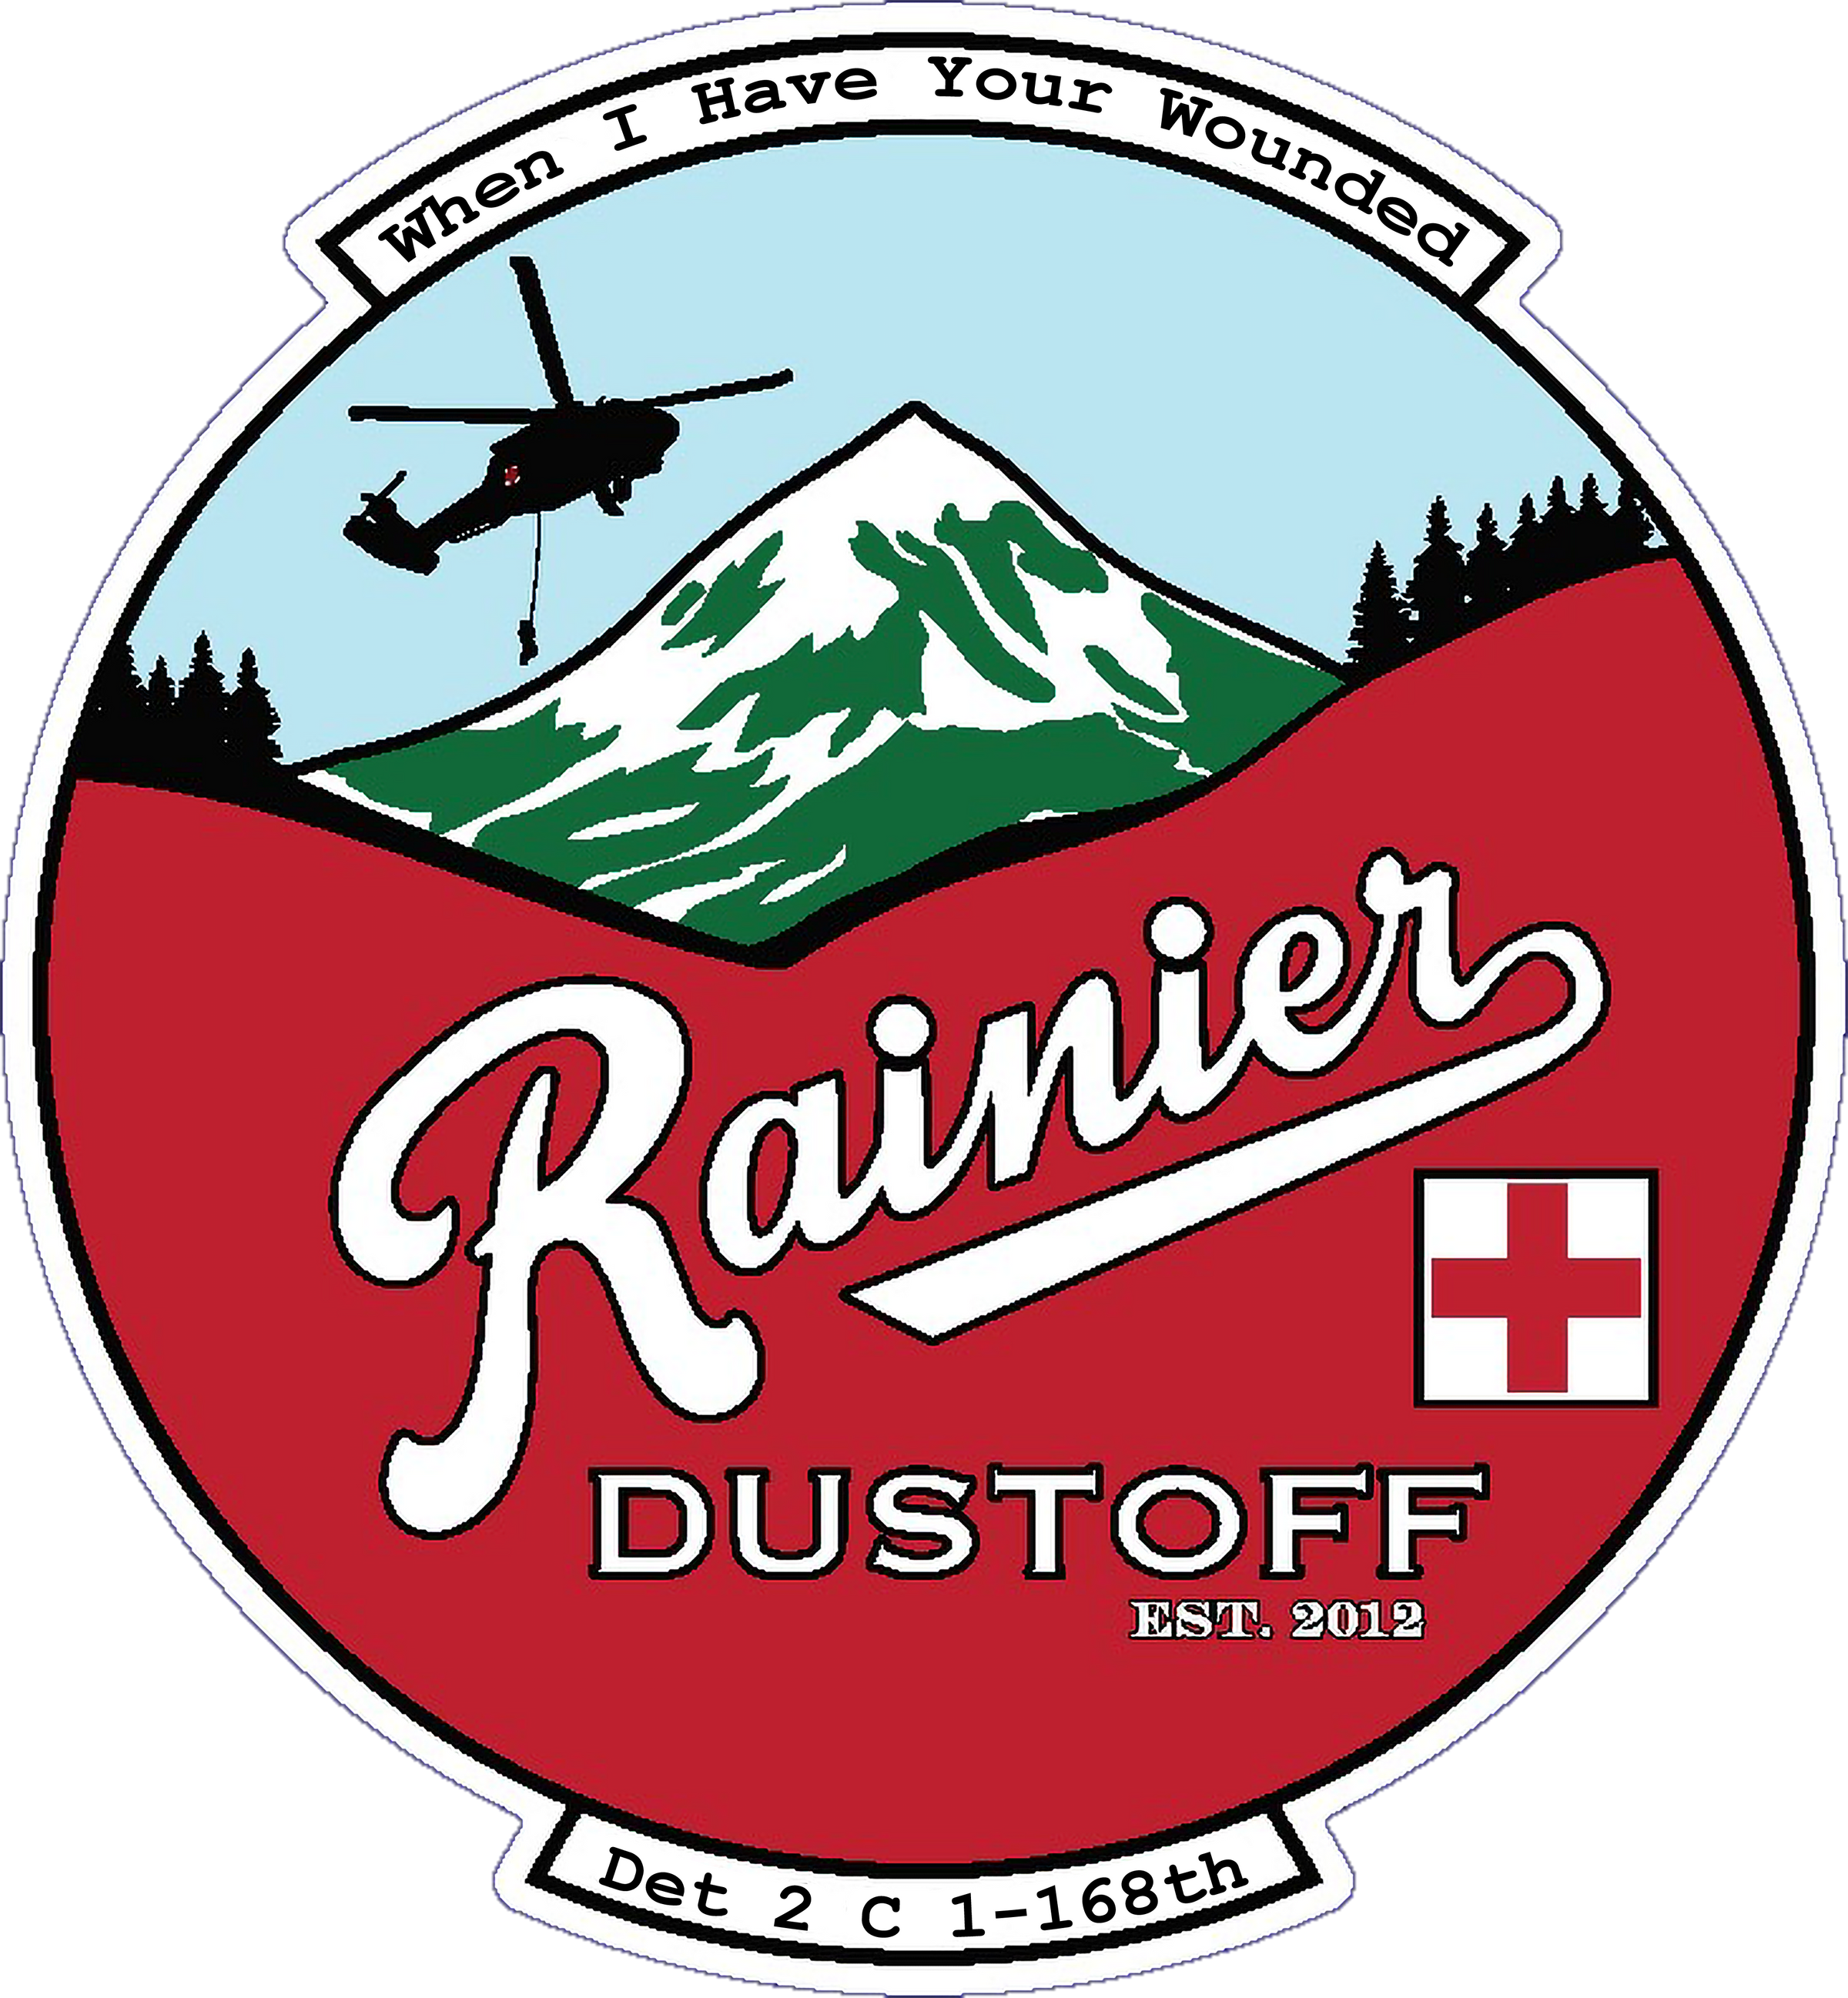 C Co, 1-168th "Rainier Dustoff"